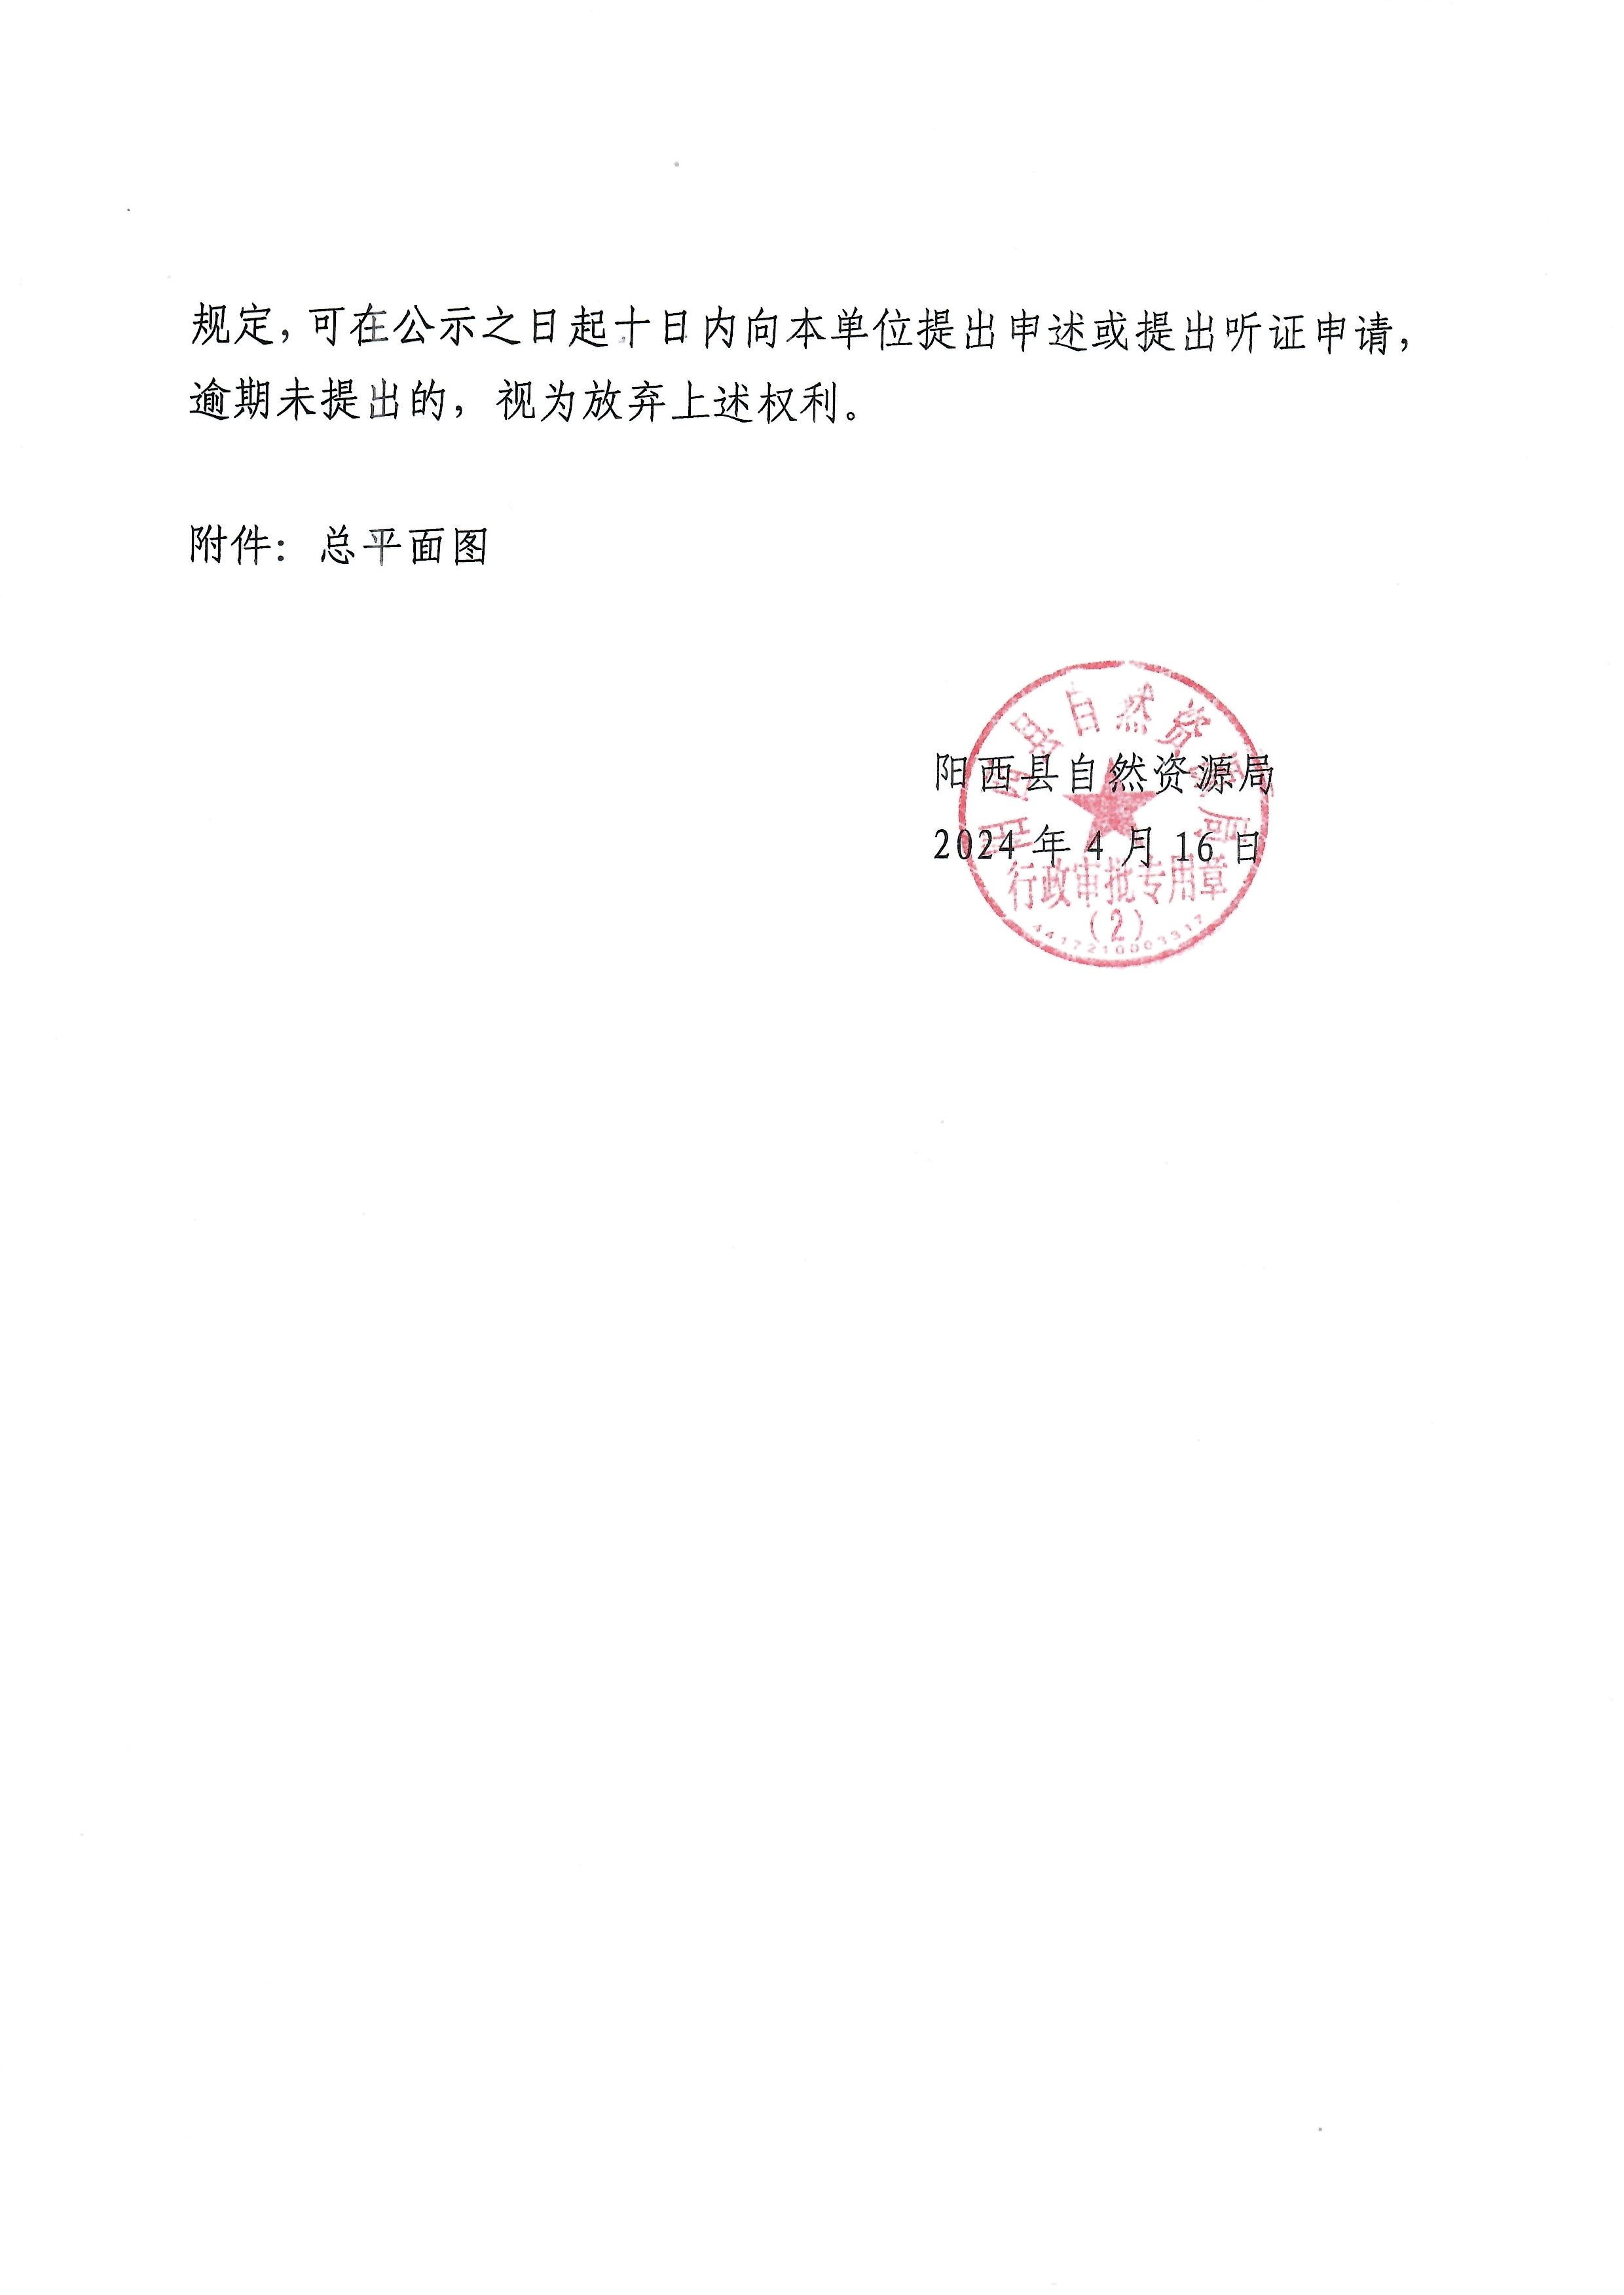 关于广东启泰电机有限公司办理变更《建设工程规划许可证》的批前公示2.jpg